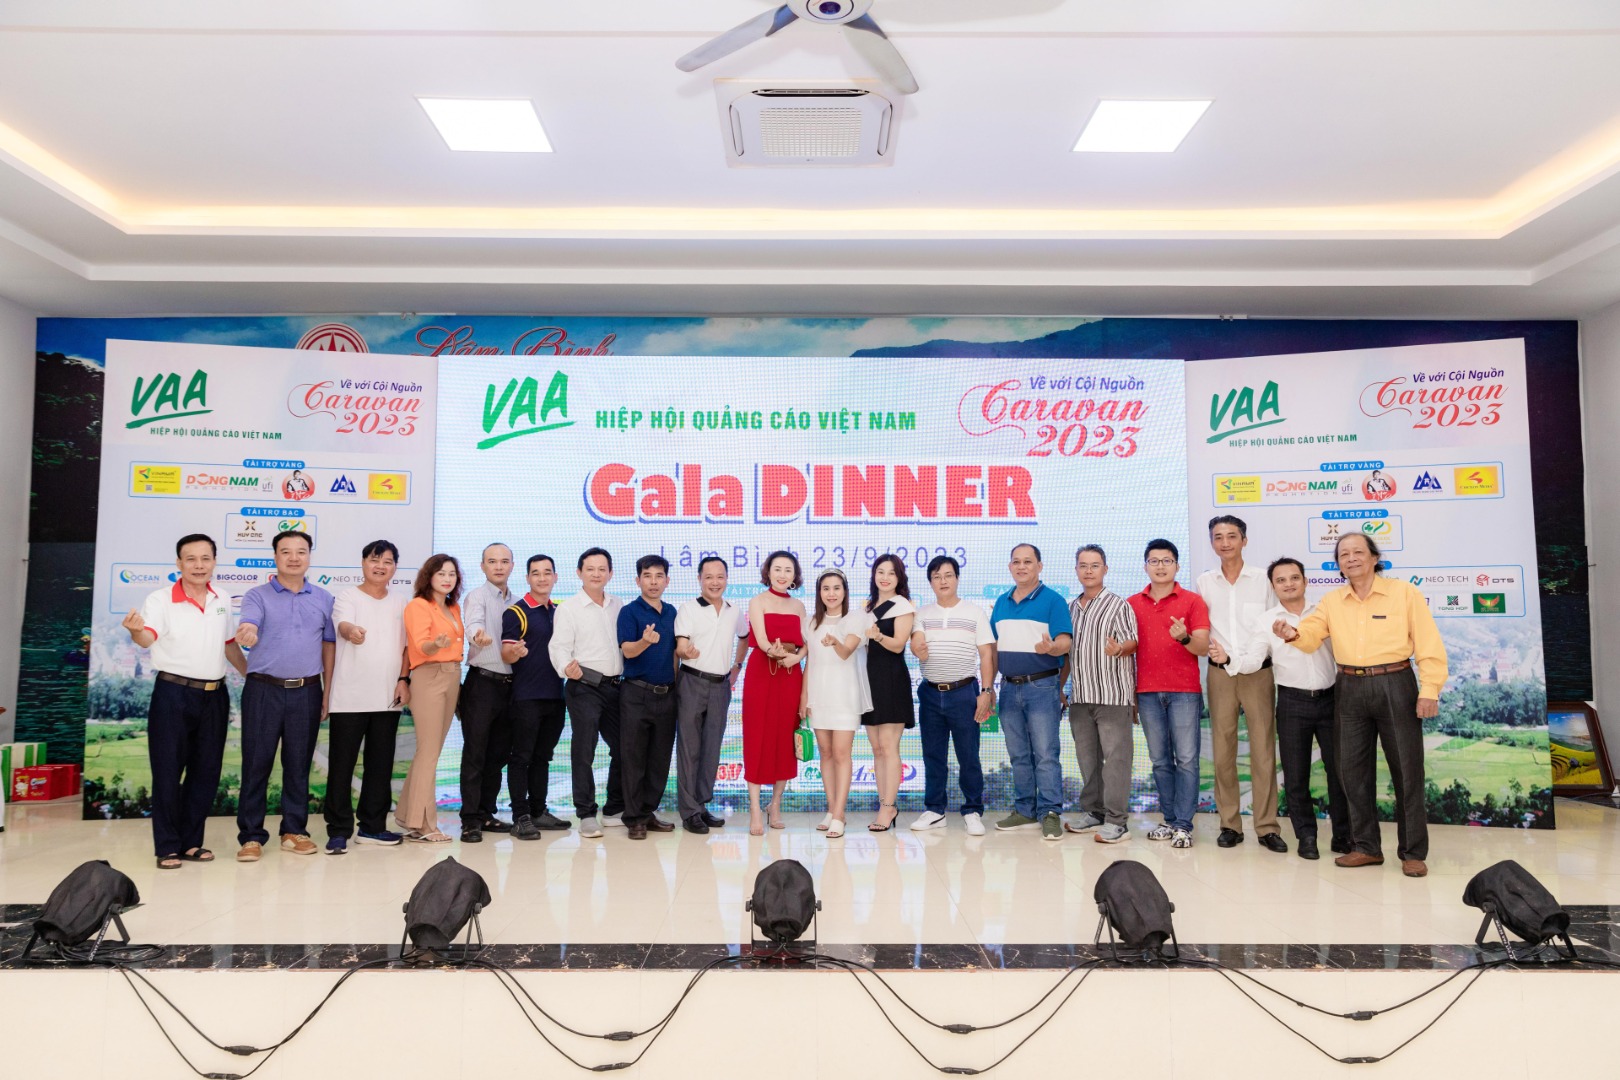 Hiệp hội Quảng cáo Việt Nam: Hành trình Caravan 2023 về với...